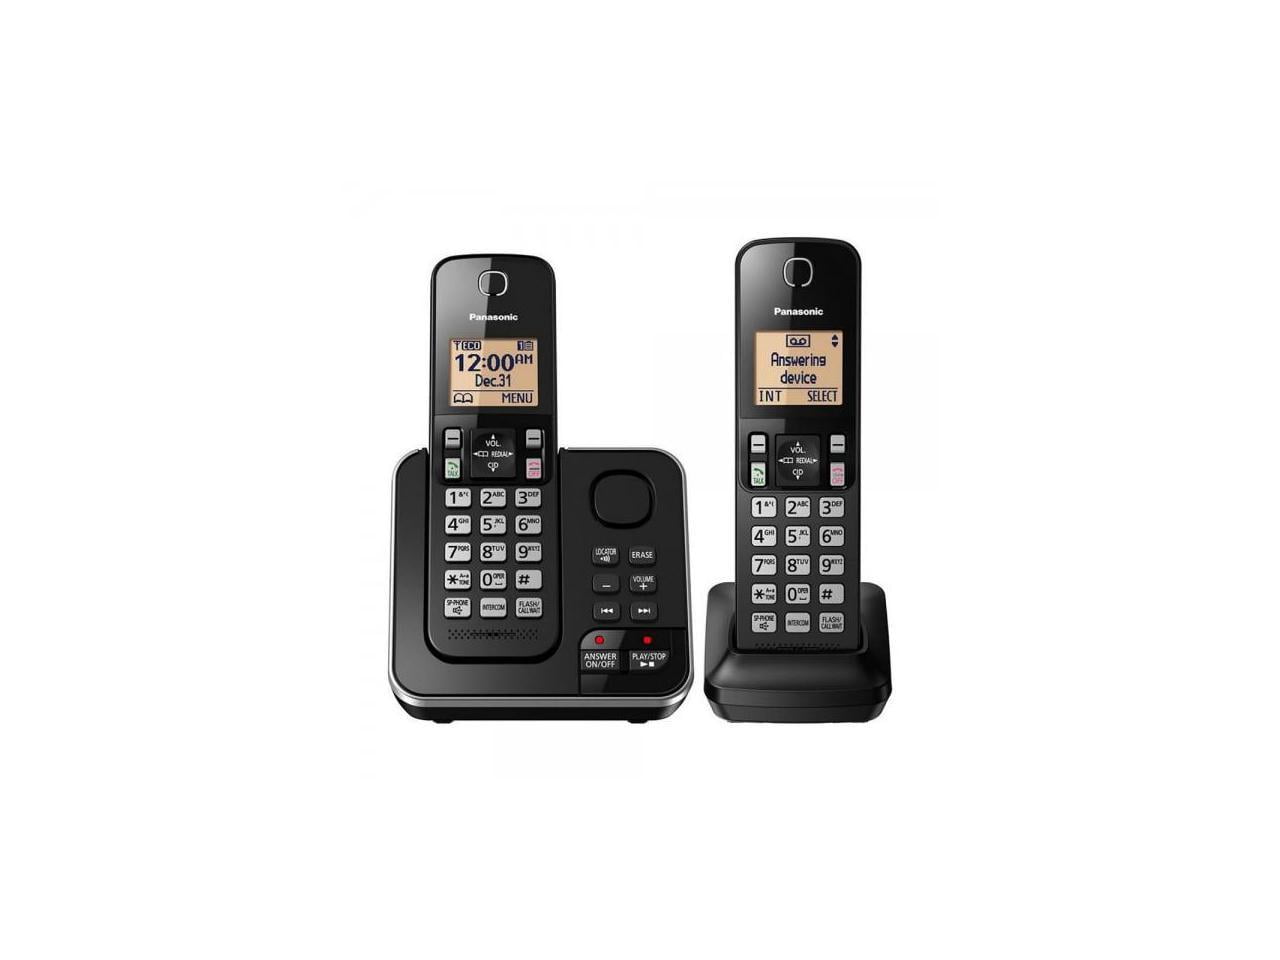 KX-TGC362 Teléfono Inalámbrico DECT - Panasonic Colombia